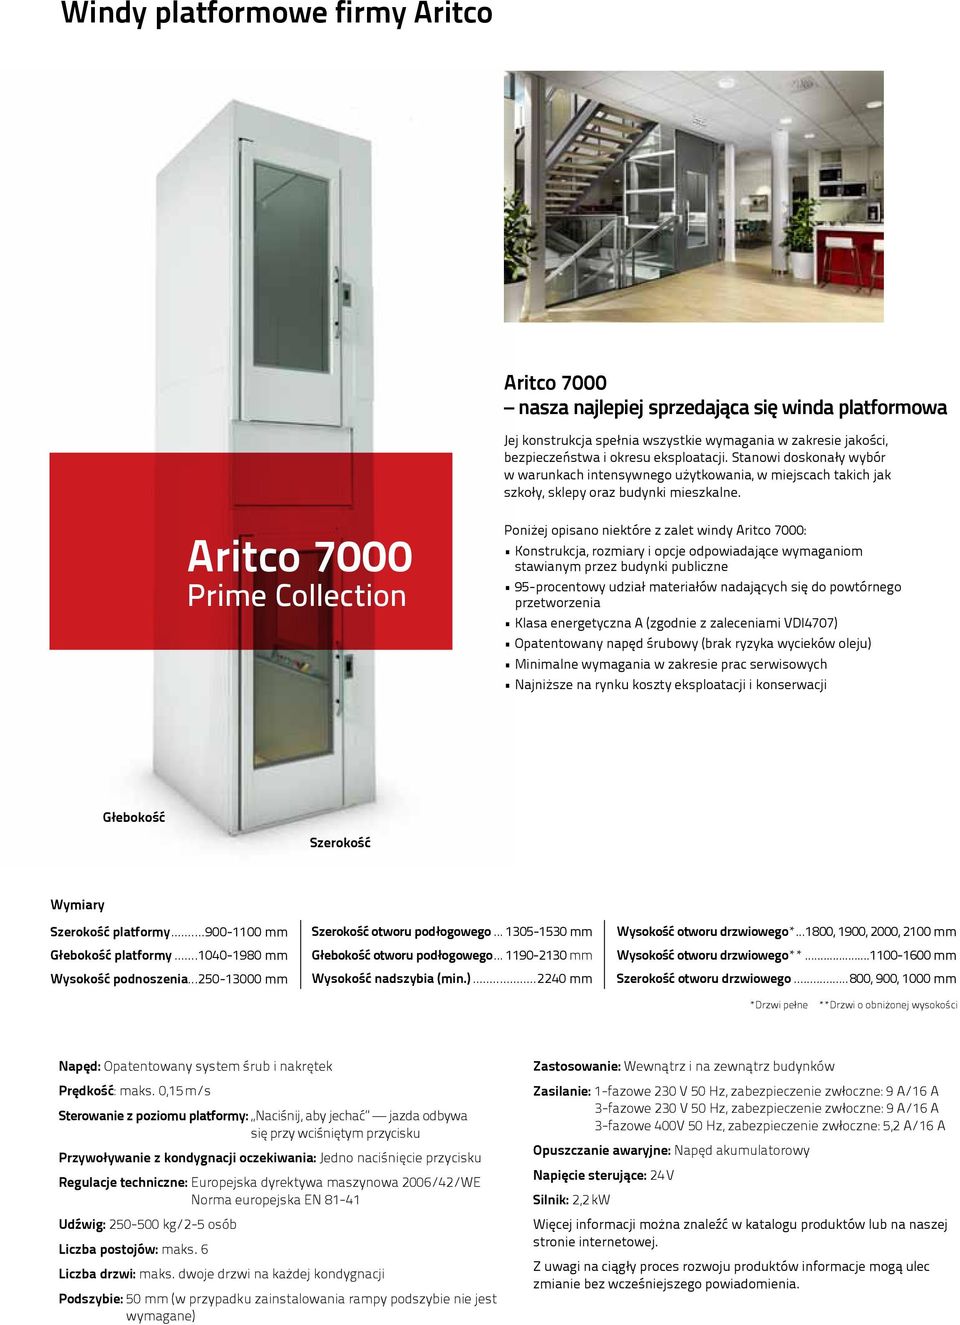 Aritco 7000 Prime Collection Poniżej opisano niektóre z zalet windy Aritco 7000: Konstrukcja, rozmiary i opcje odpowiadające wymaganiom stawianym przez budynki publiczne 95-procentowy udział